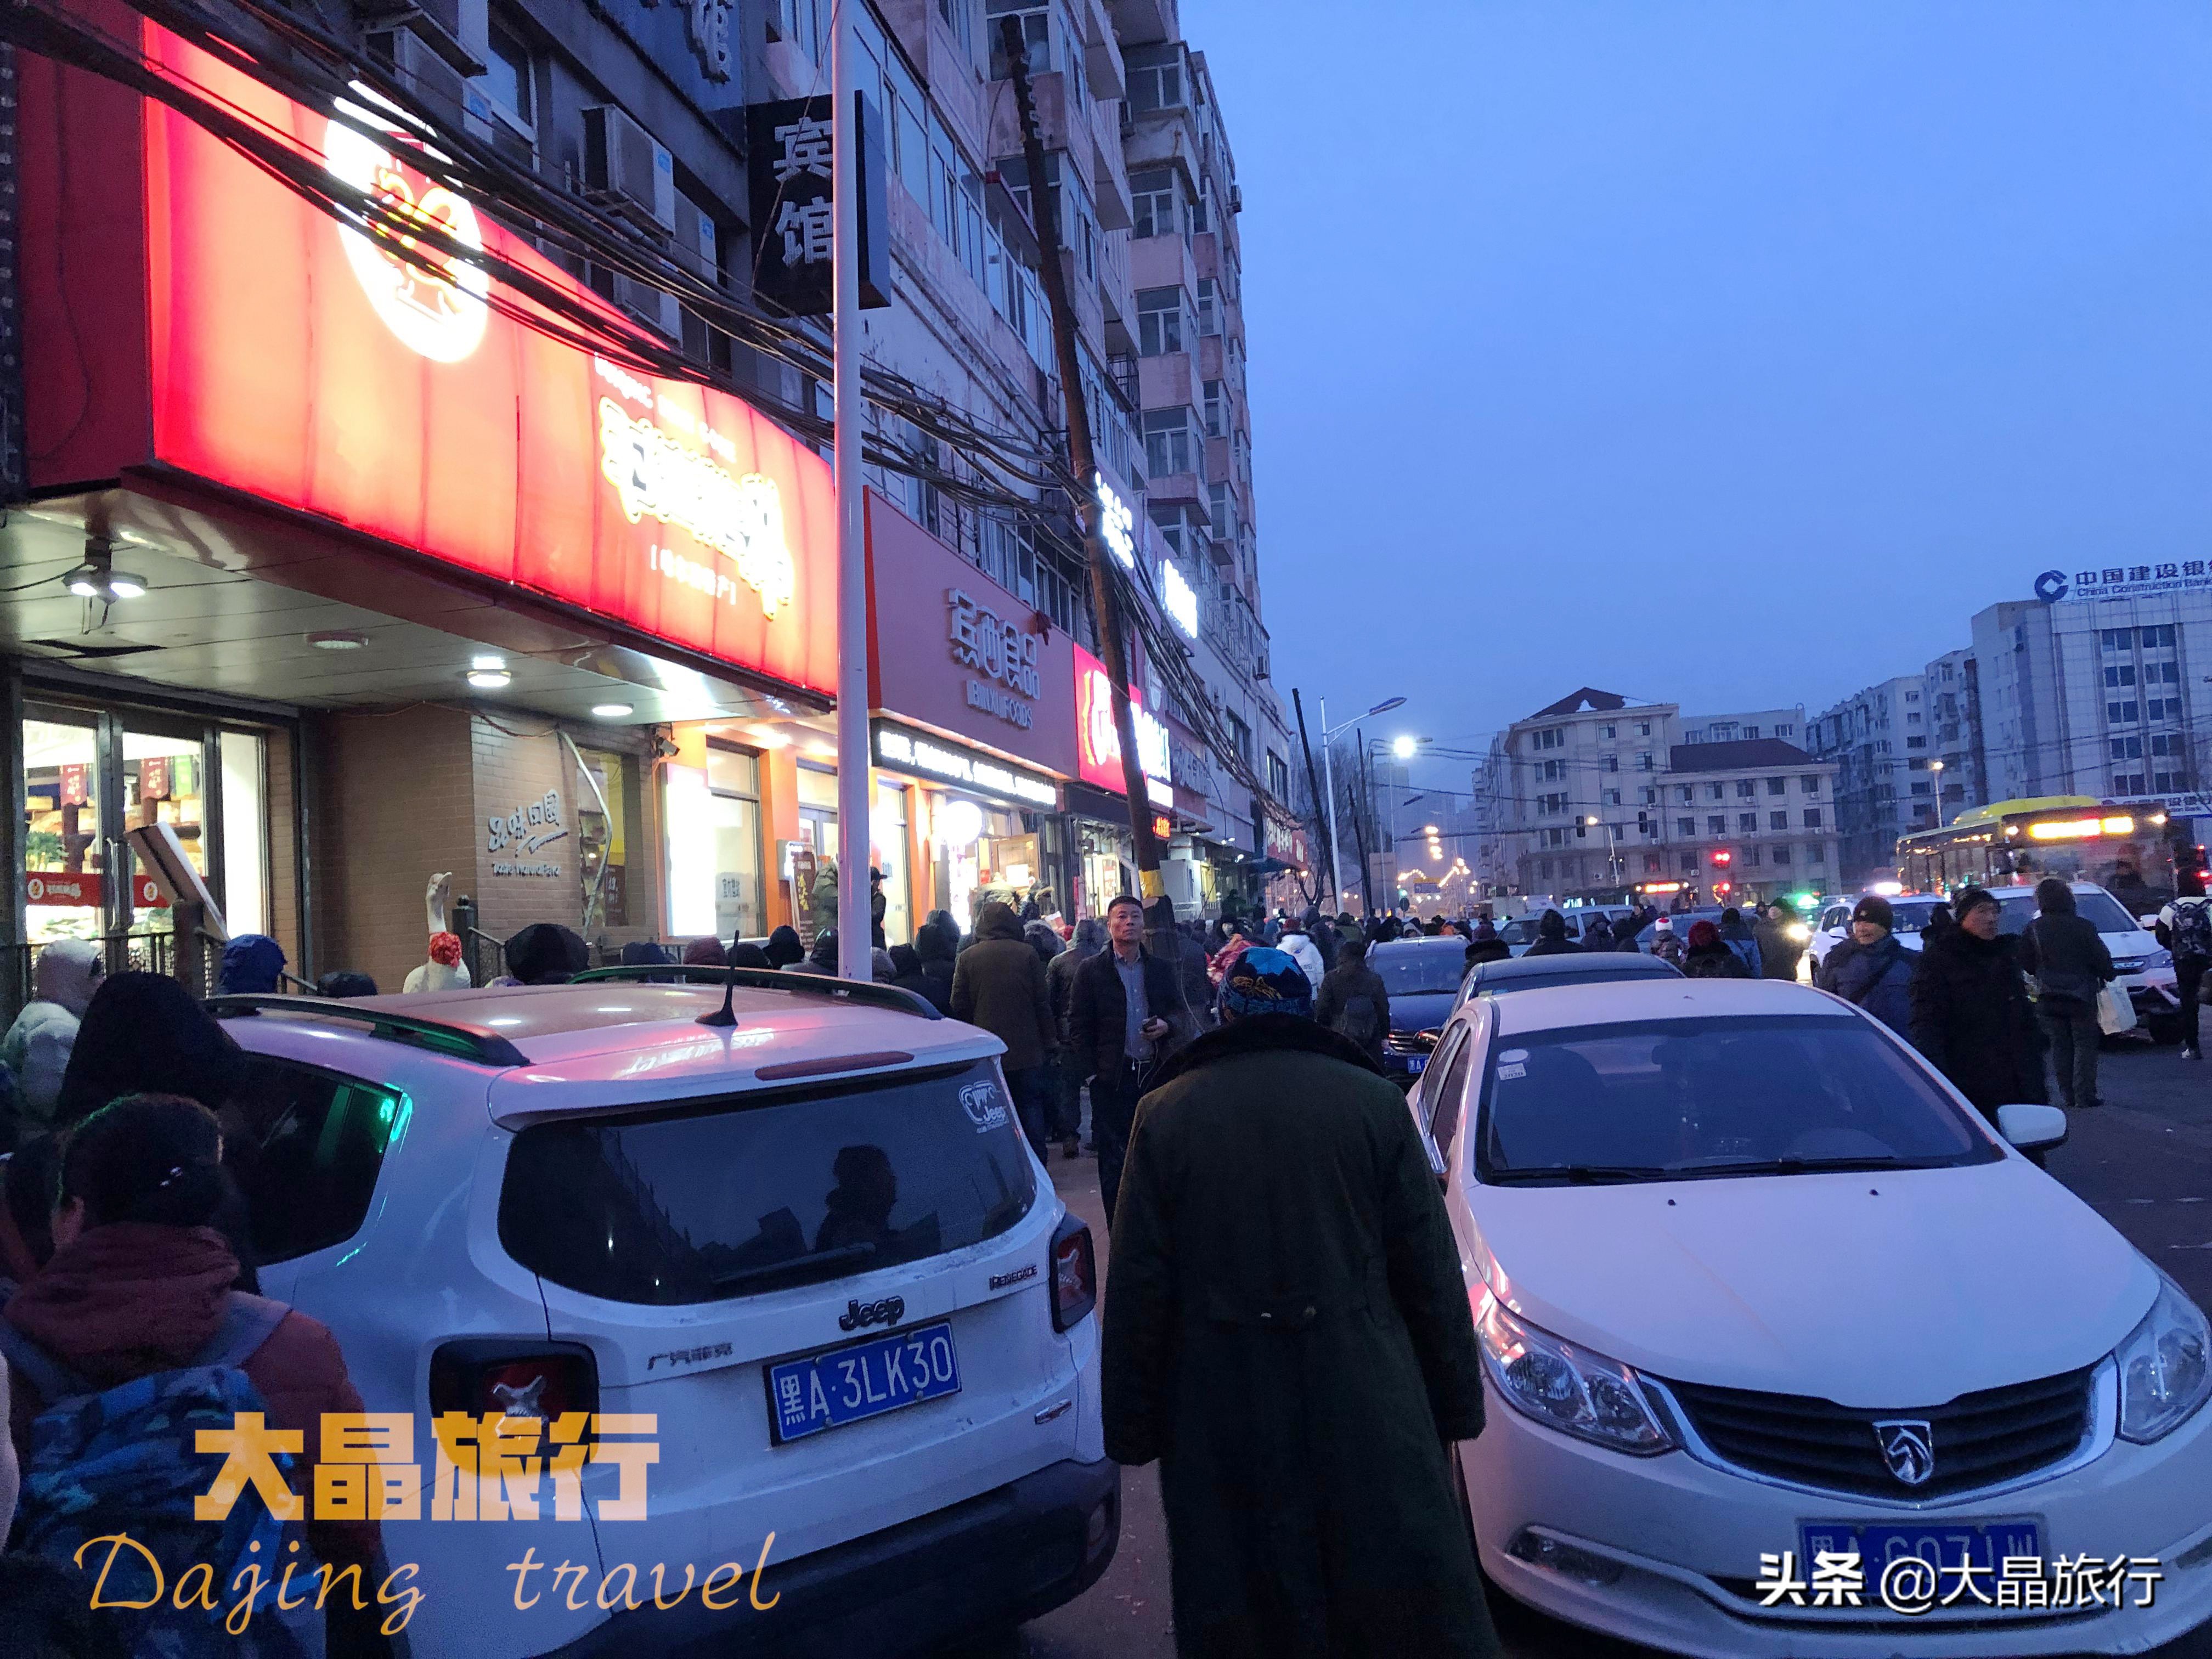 凌晨5点排队买哈尔滨最火红肠，结果却是：卖完了